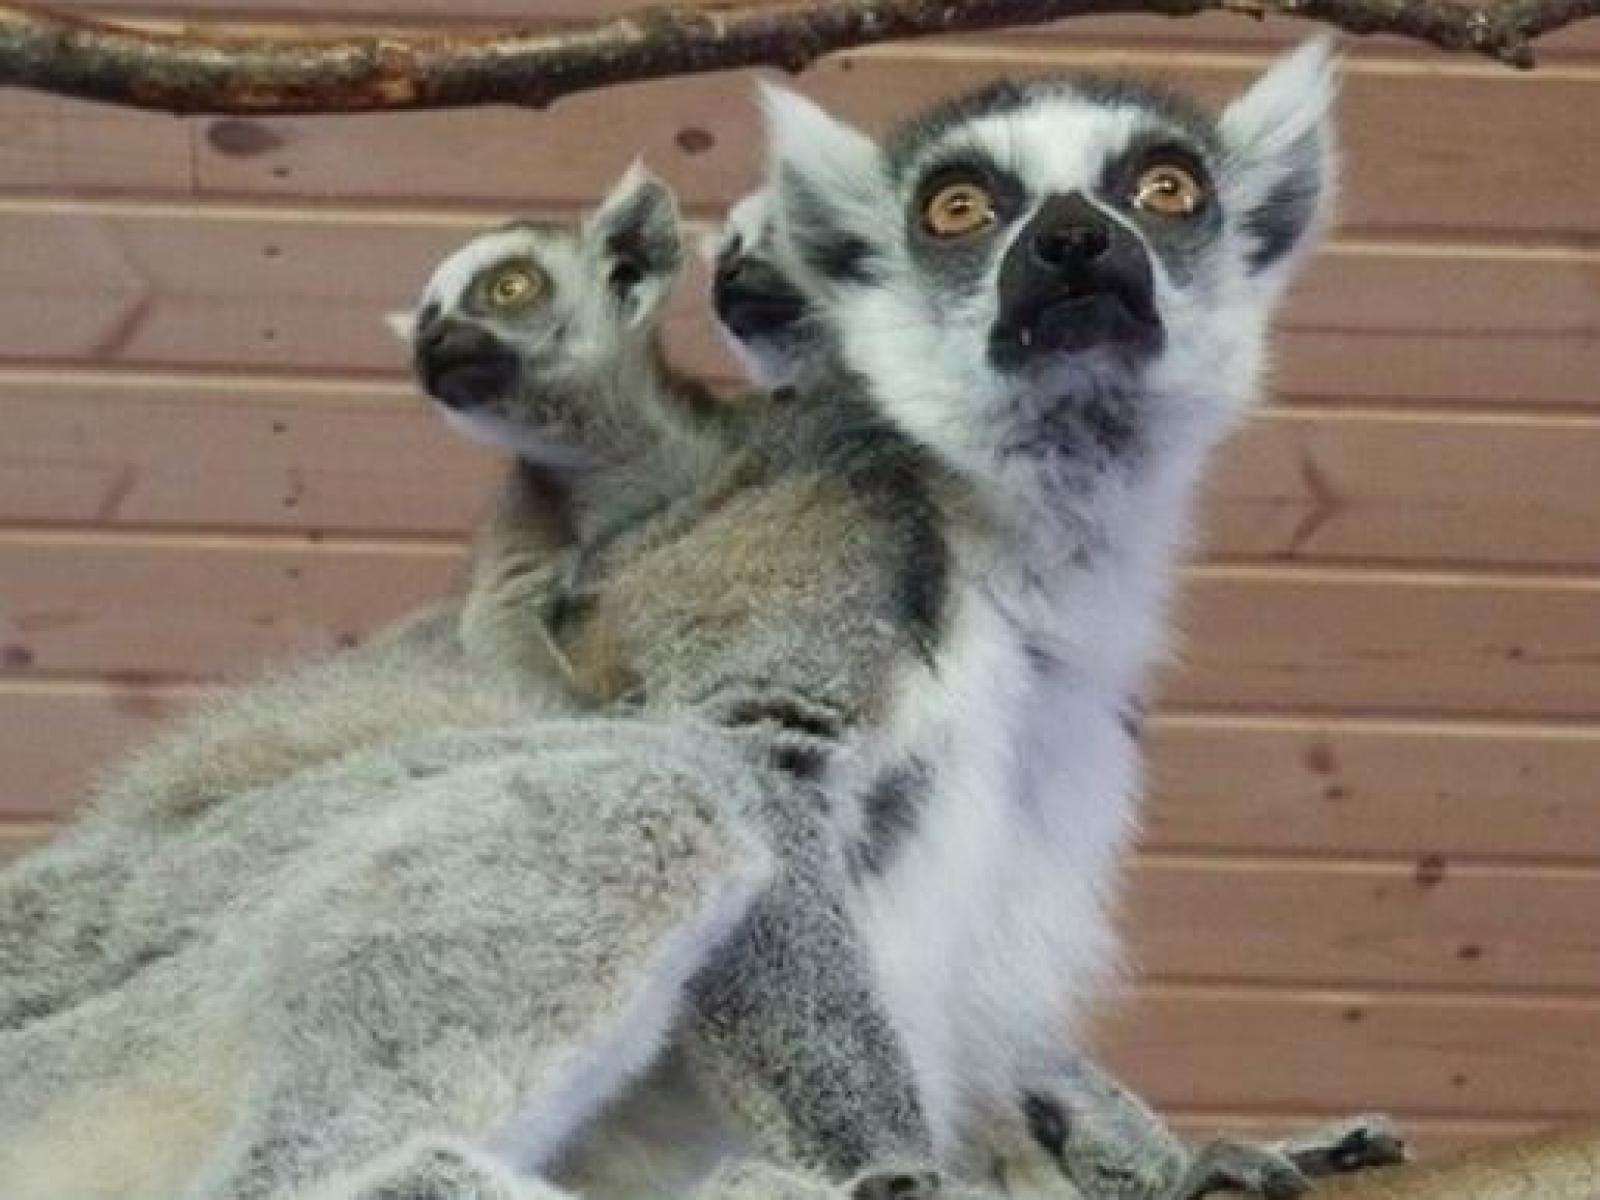 Lemurer Junsele djurpark